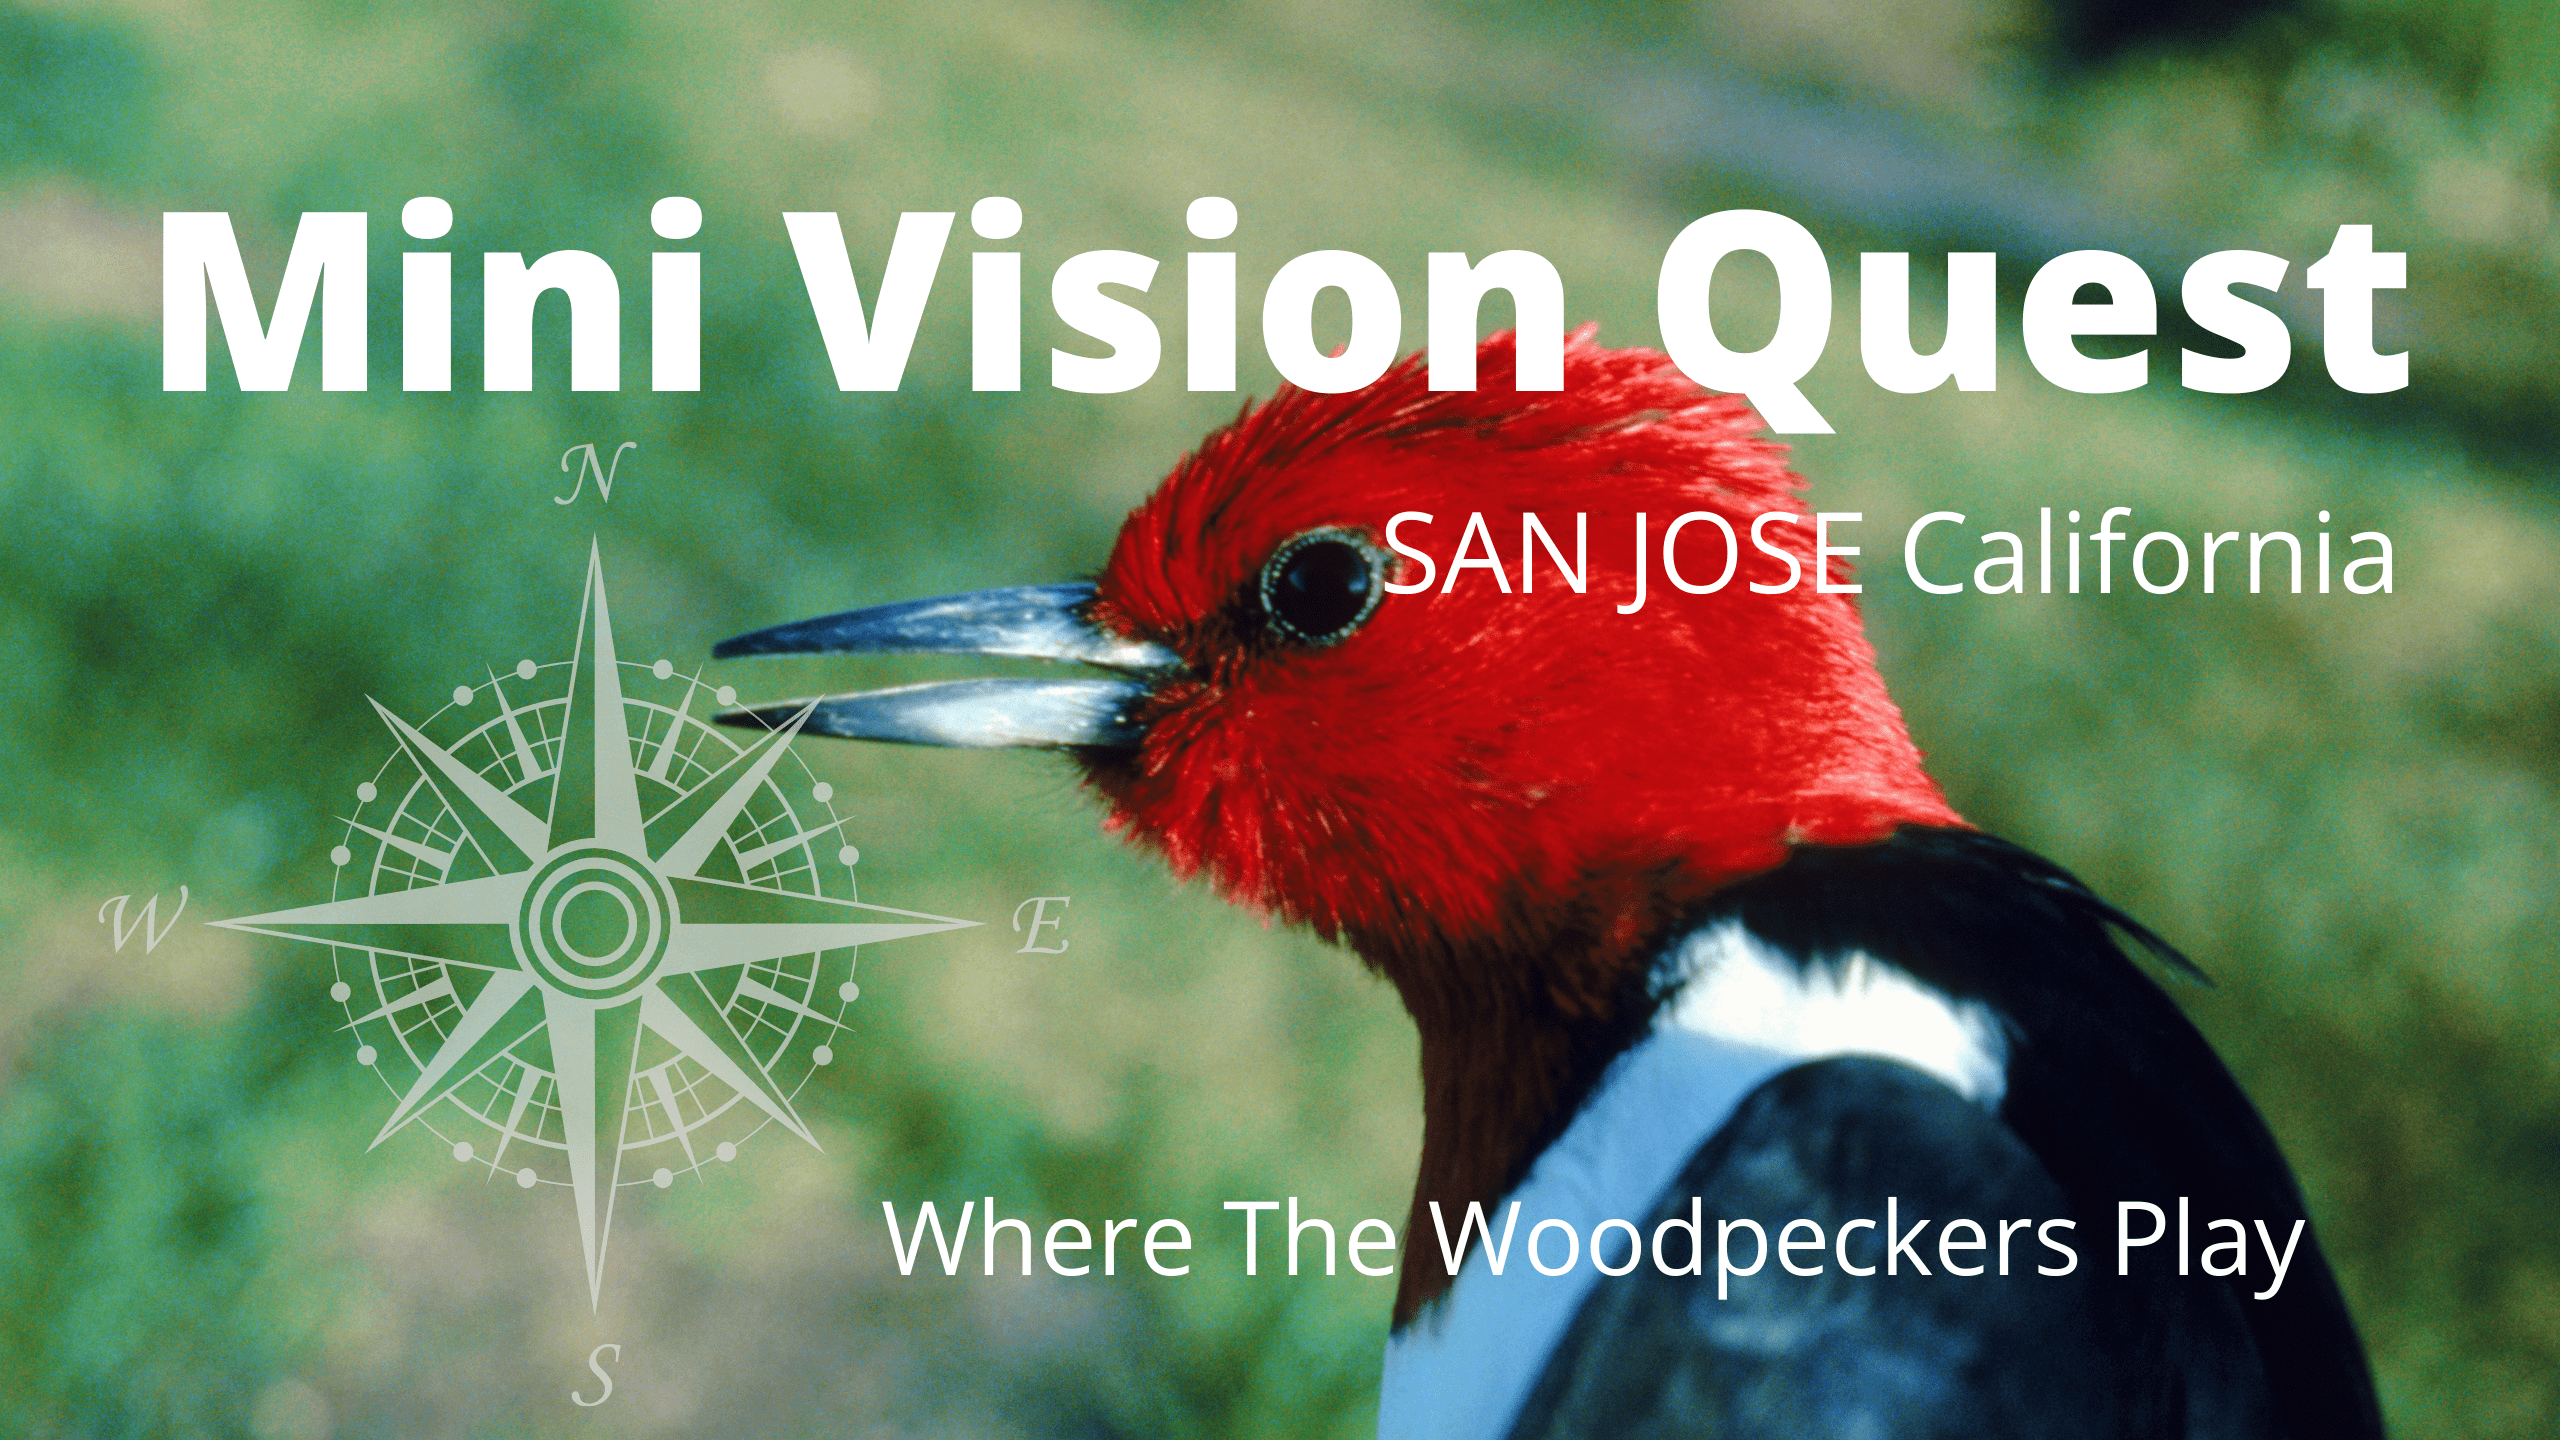 Mini Vision Quest info pic1